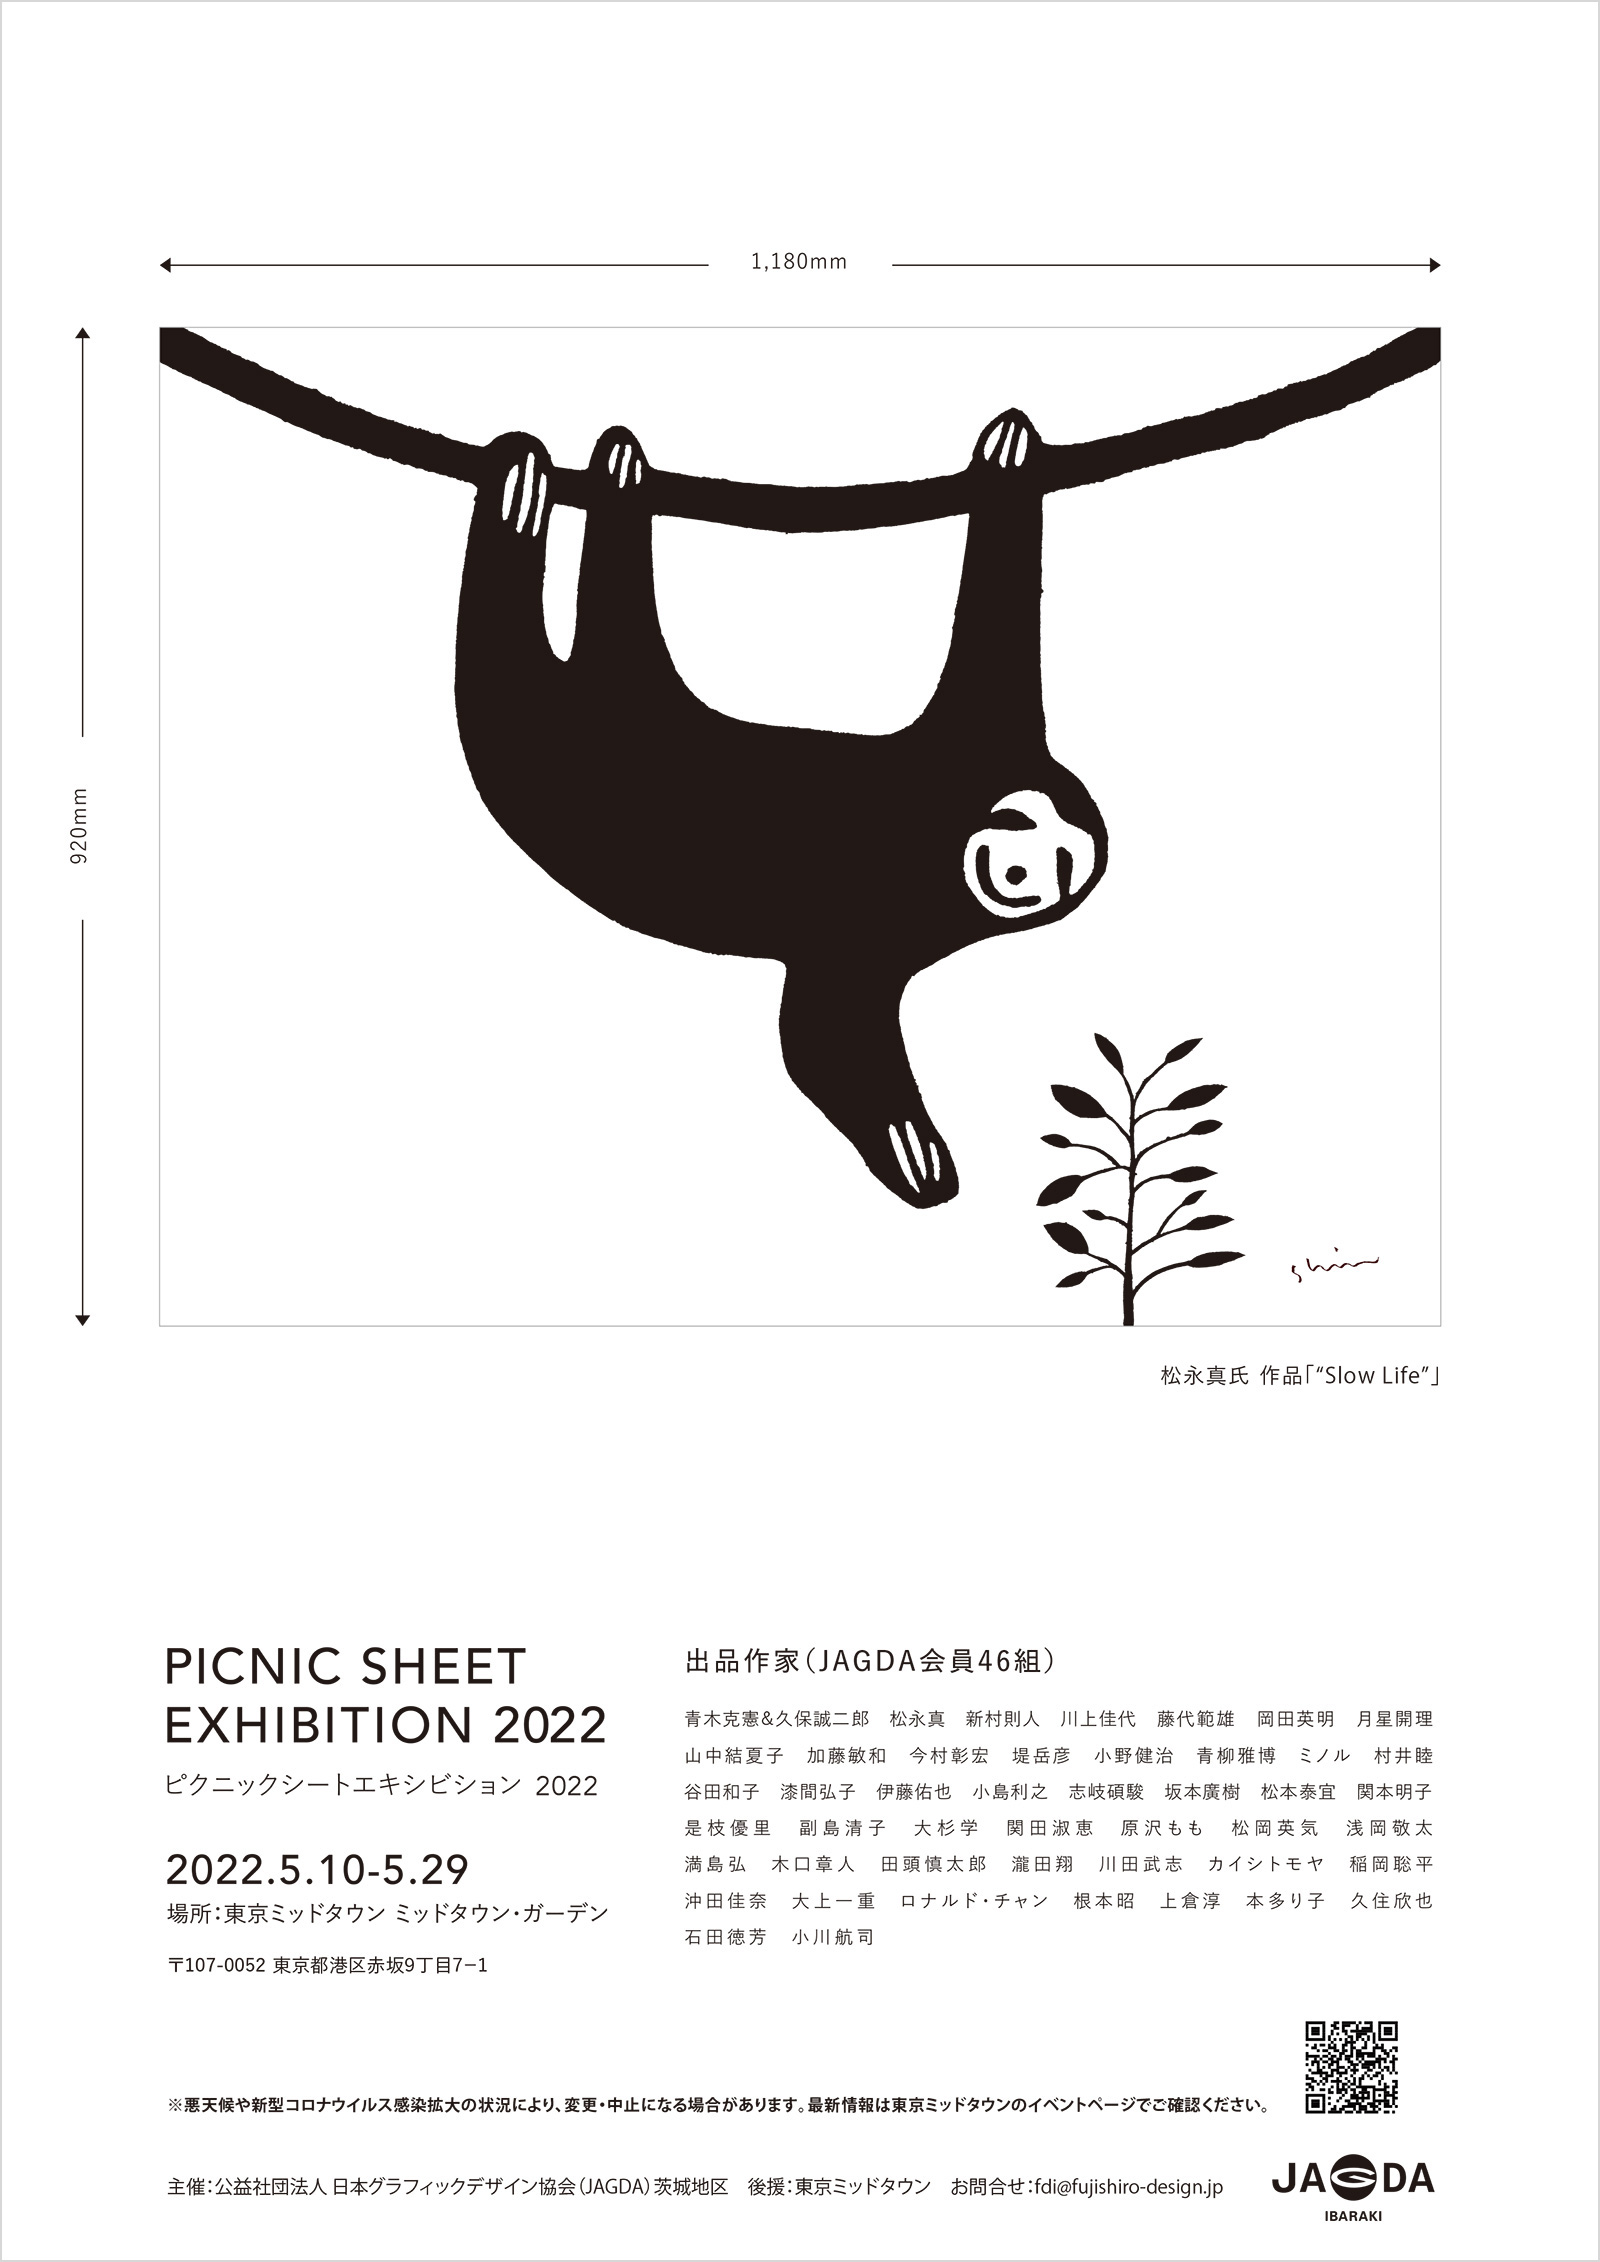 PICNIC SHEET EXHIBITION 2022【JAGDA茨城】